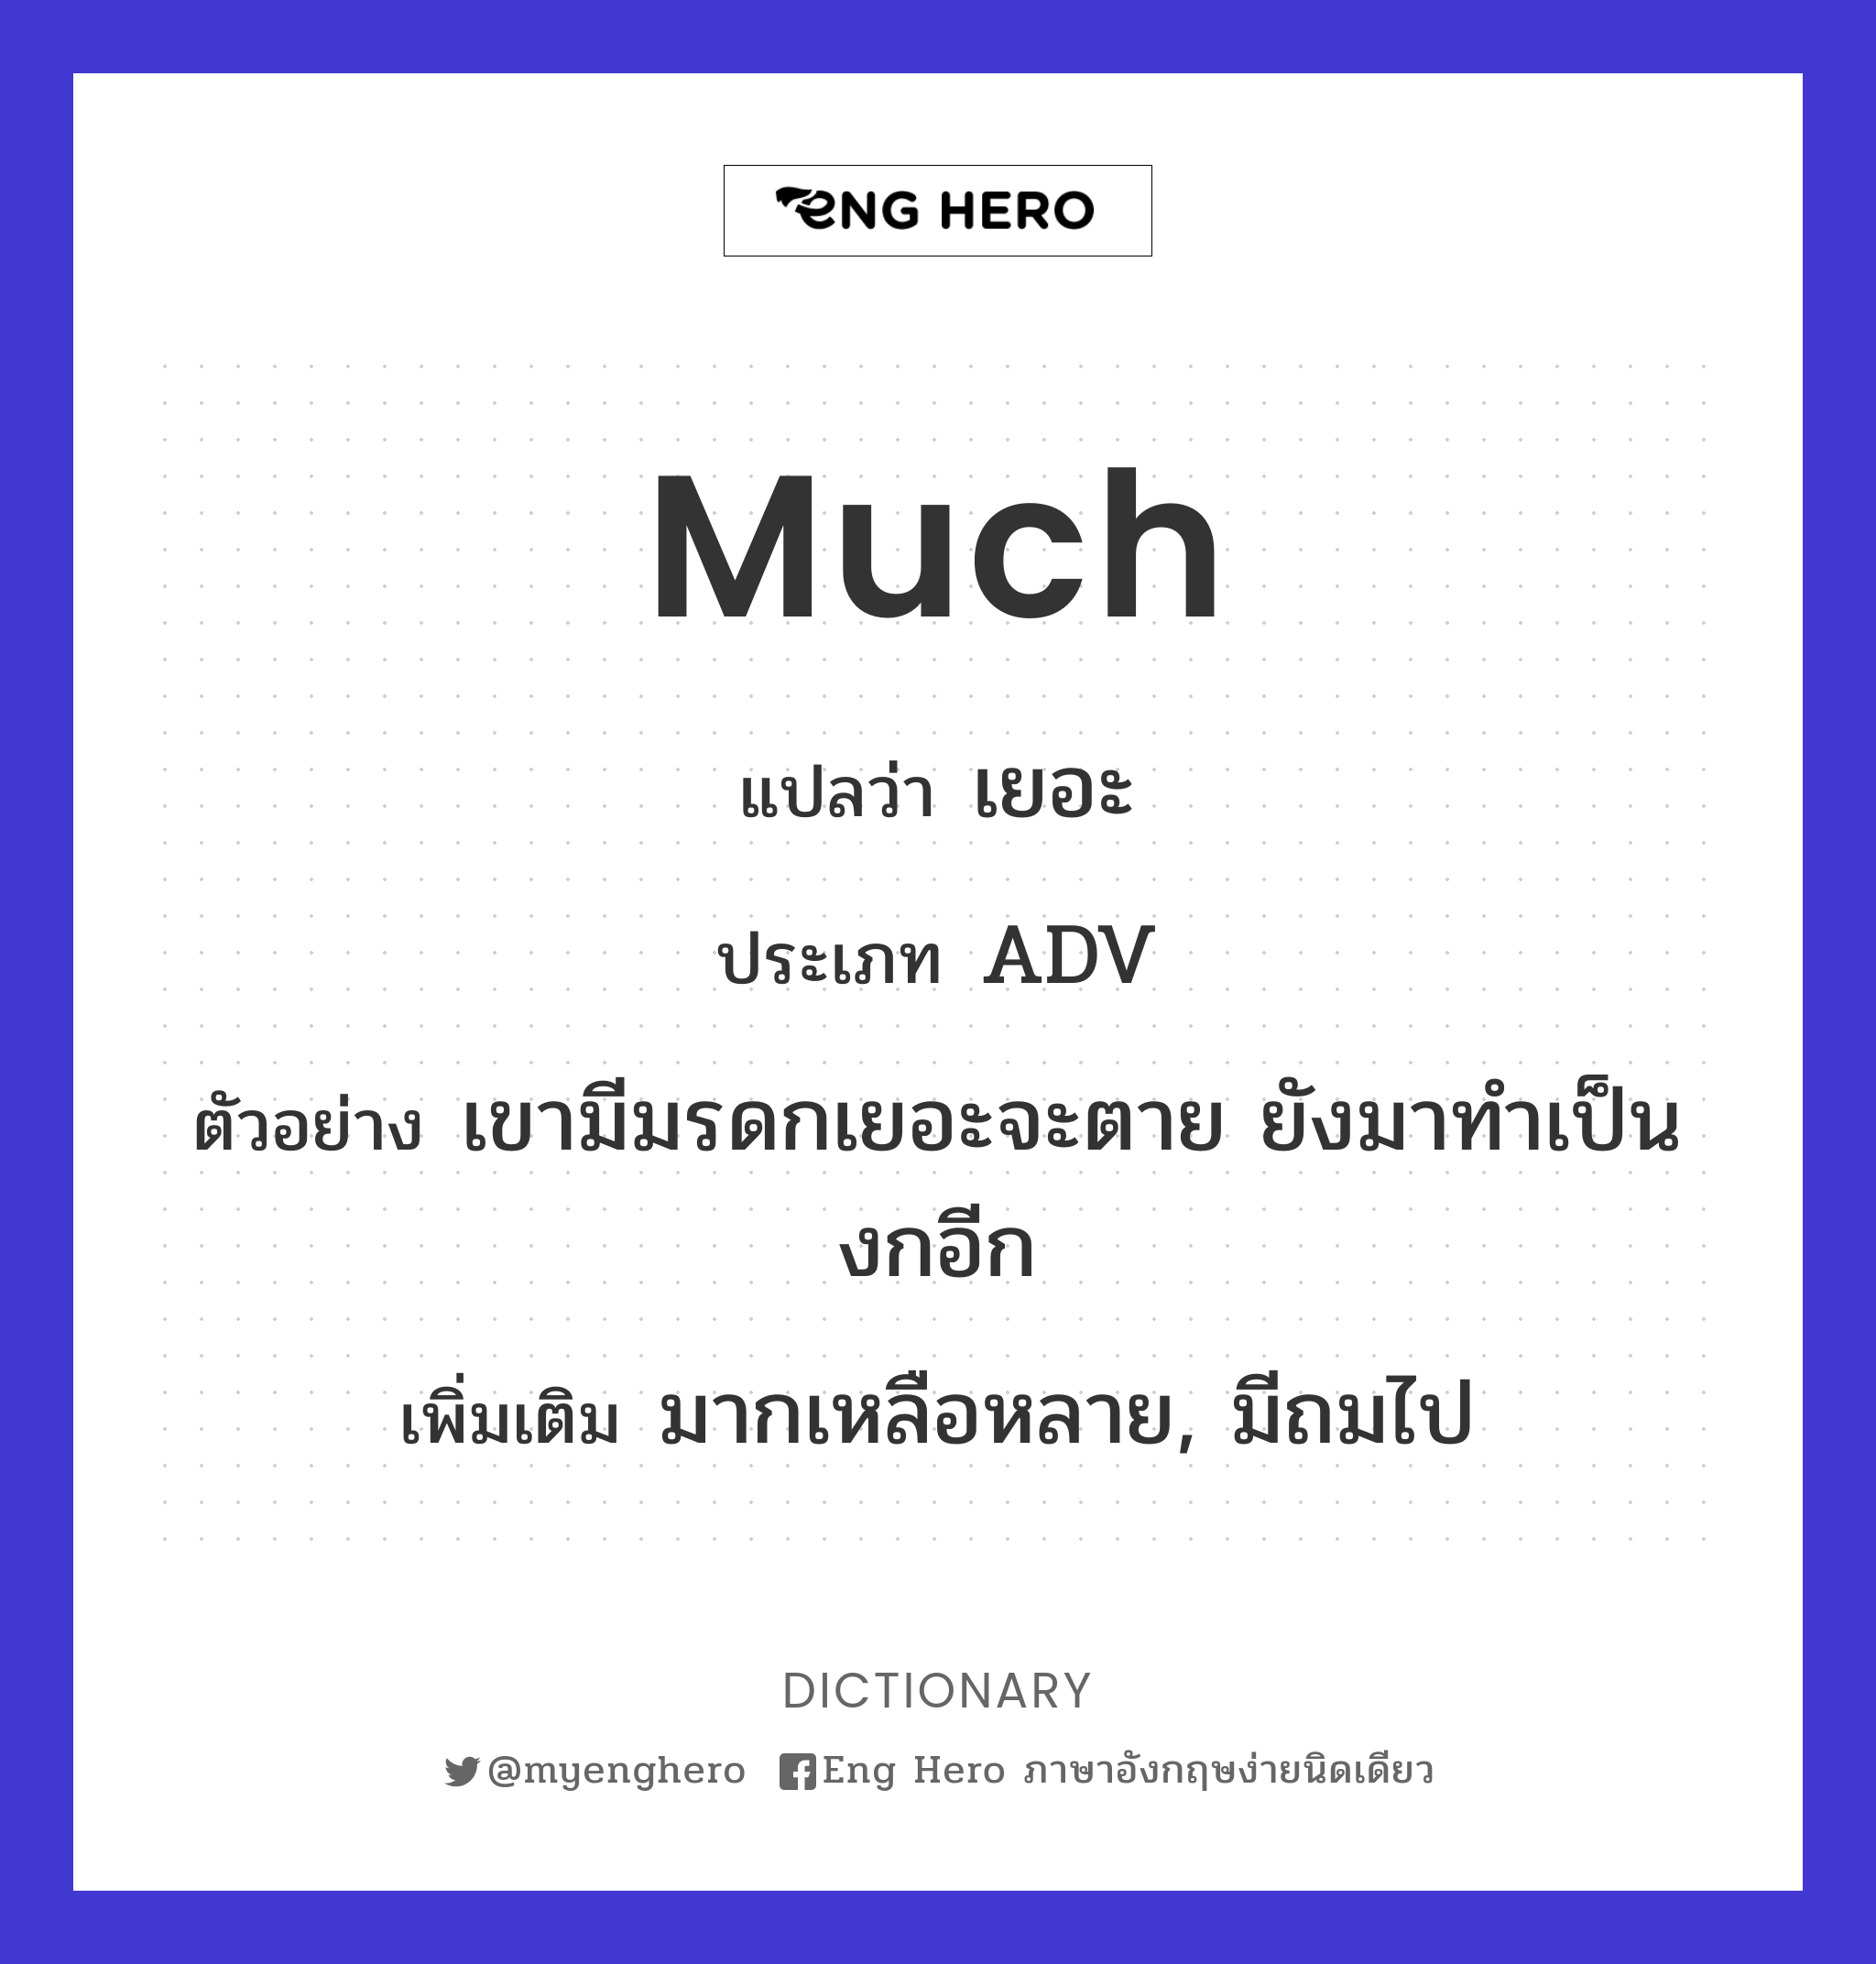 much